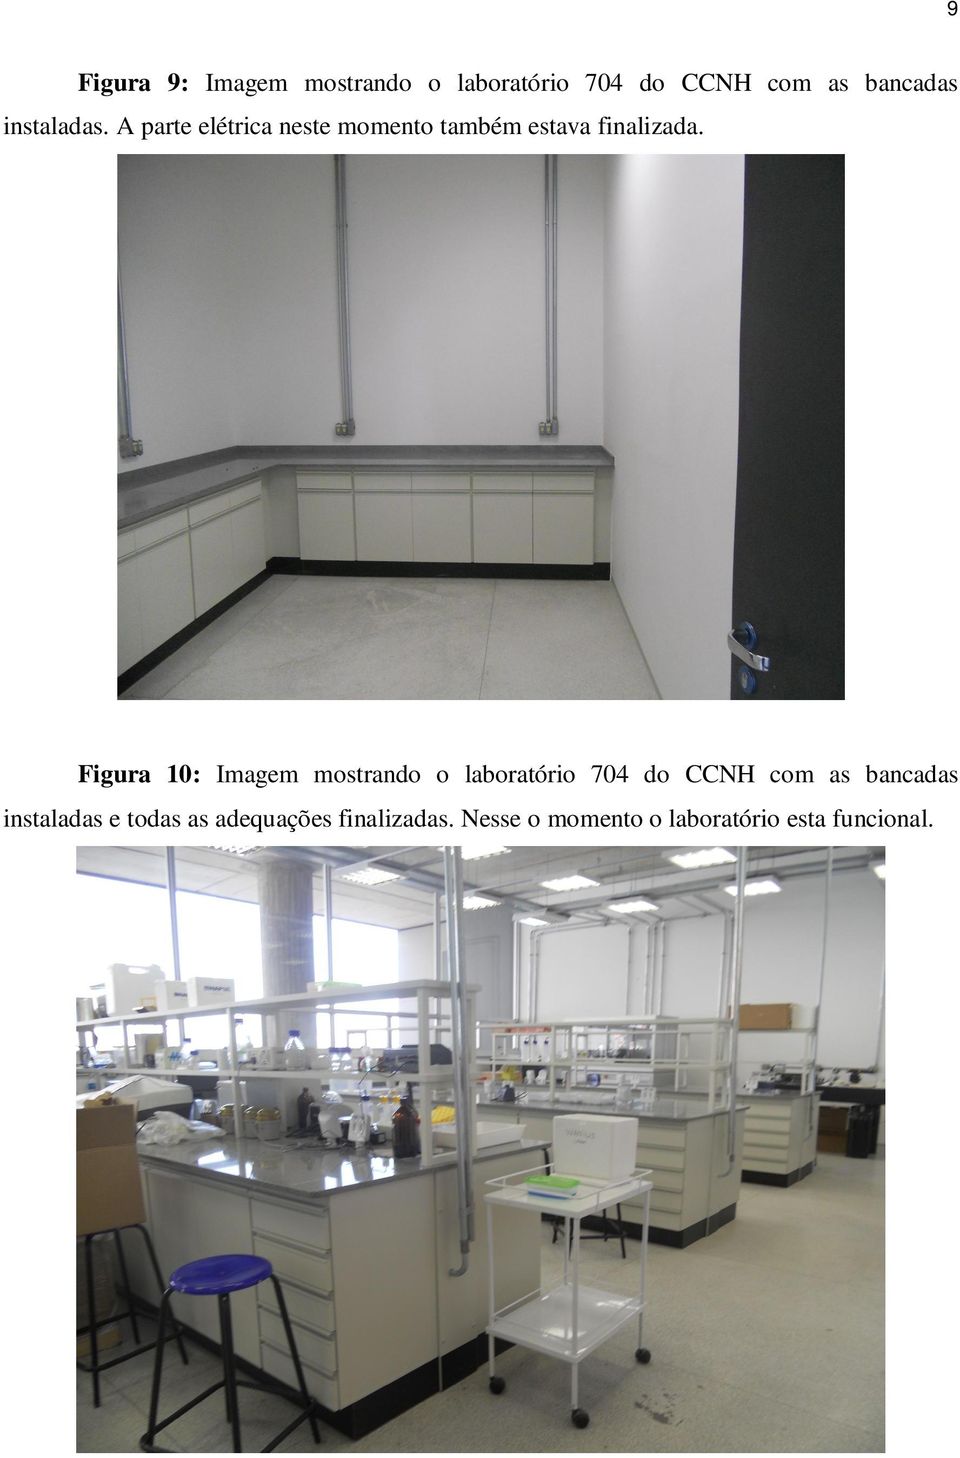 Figura 10: Imagem mostrando o laboratório 704 do CCNH com as bancadas